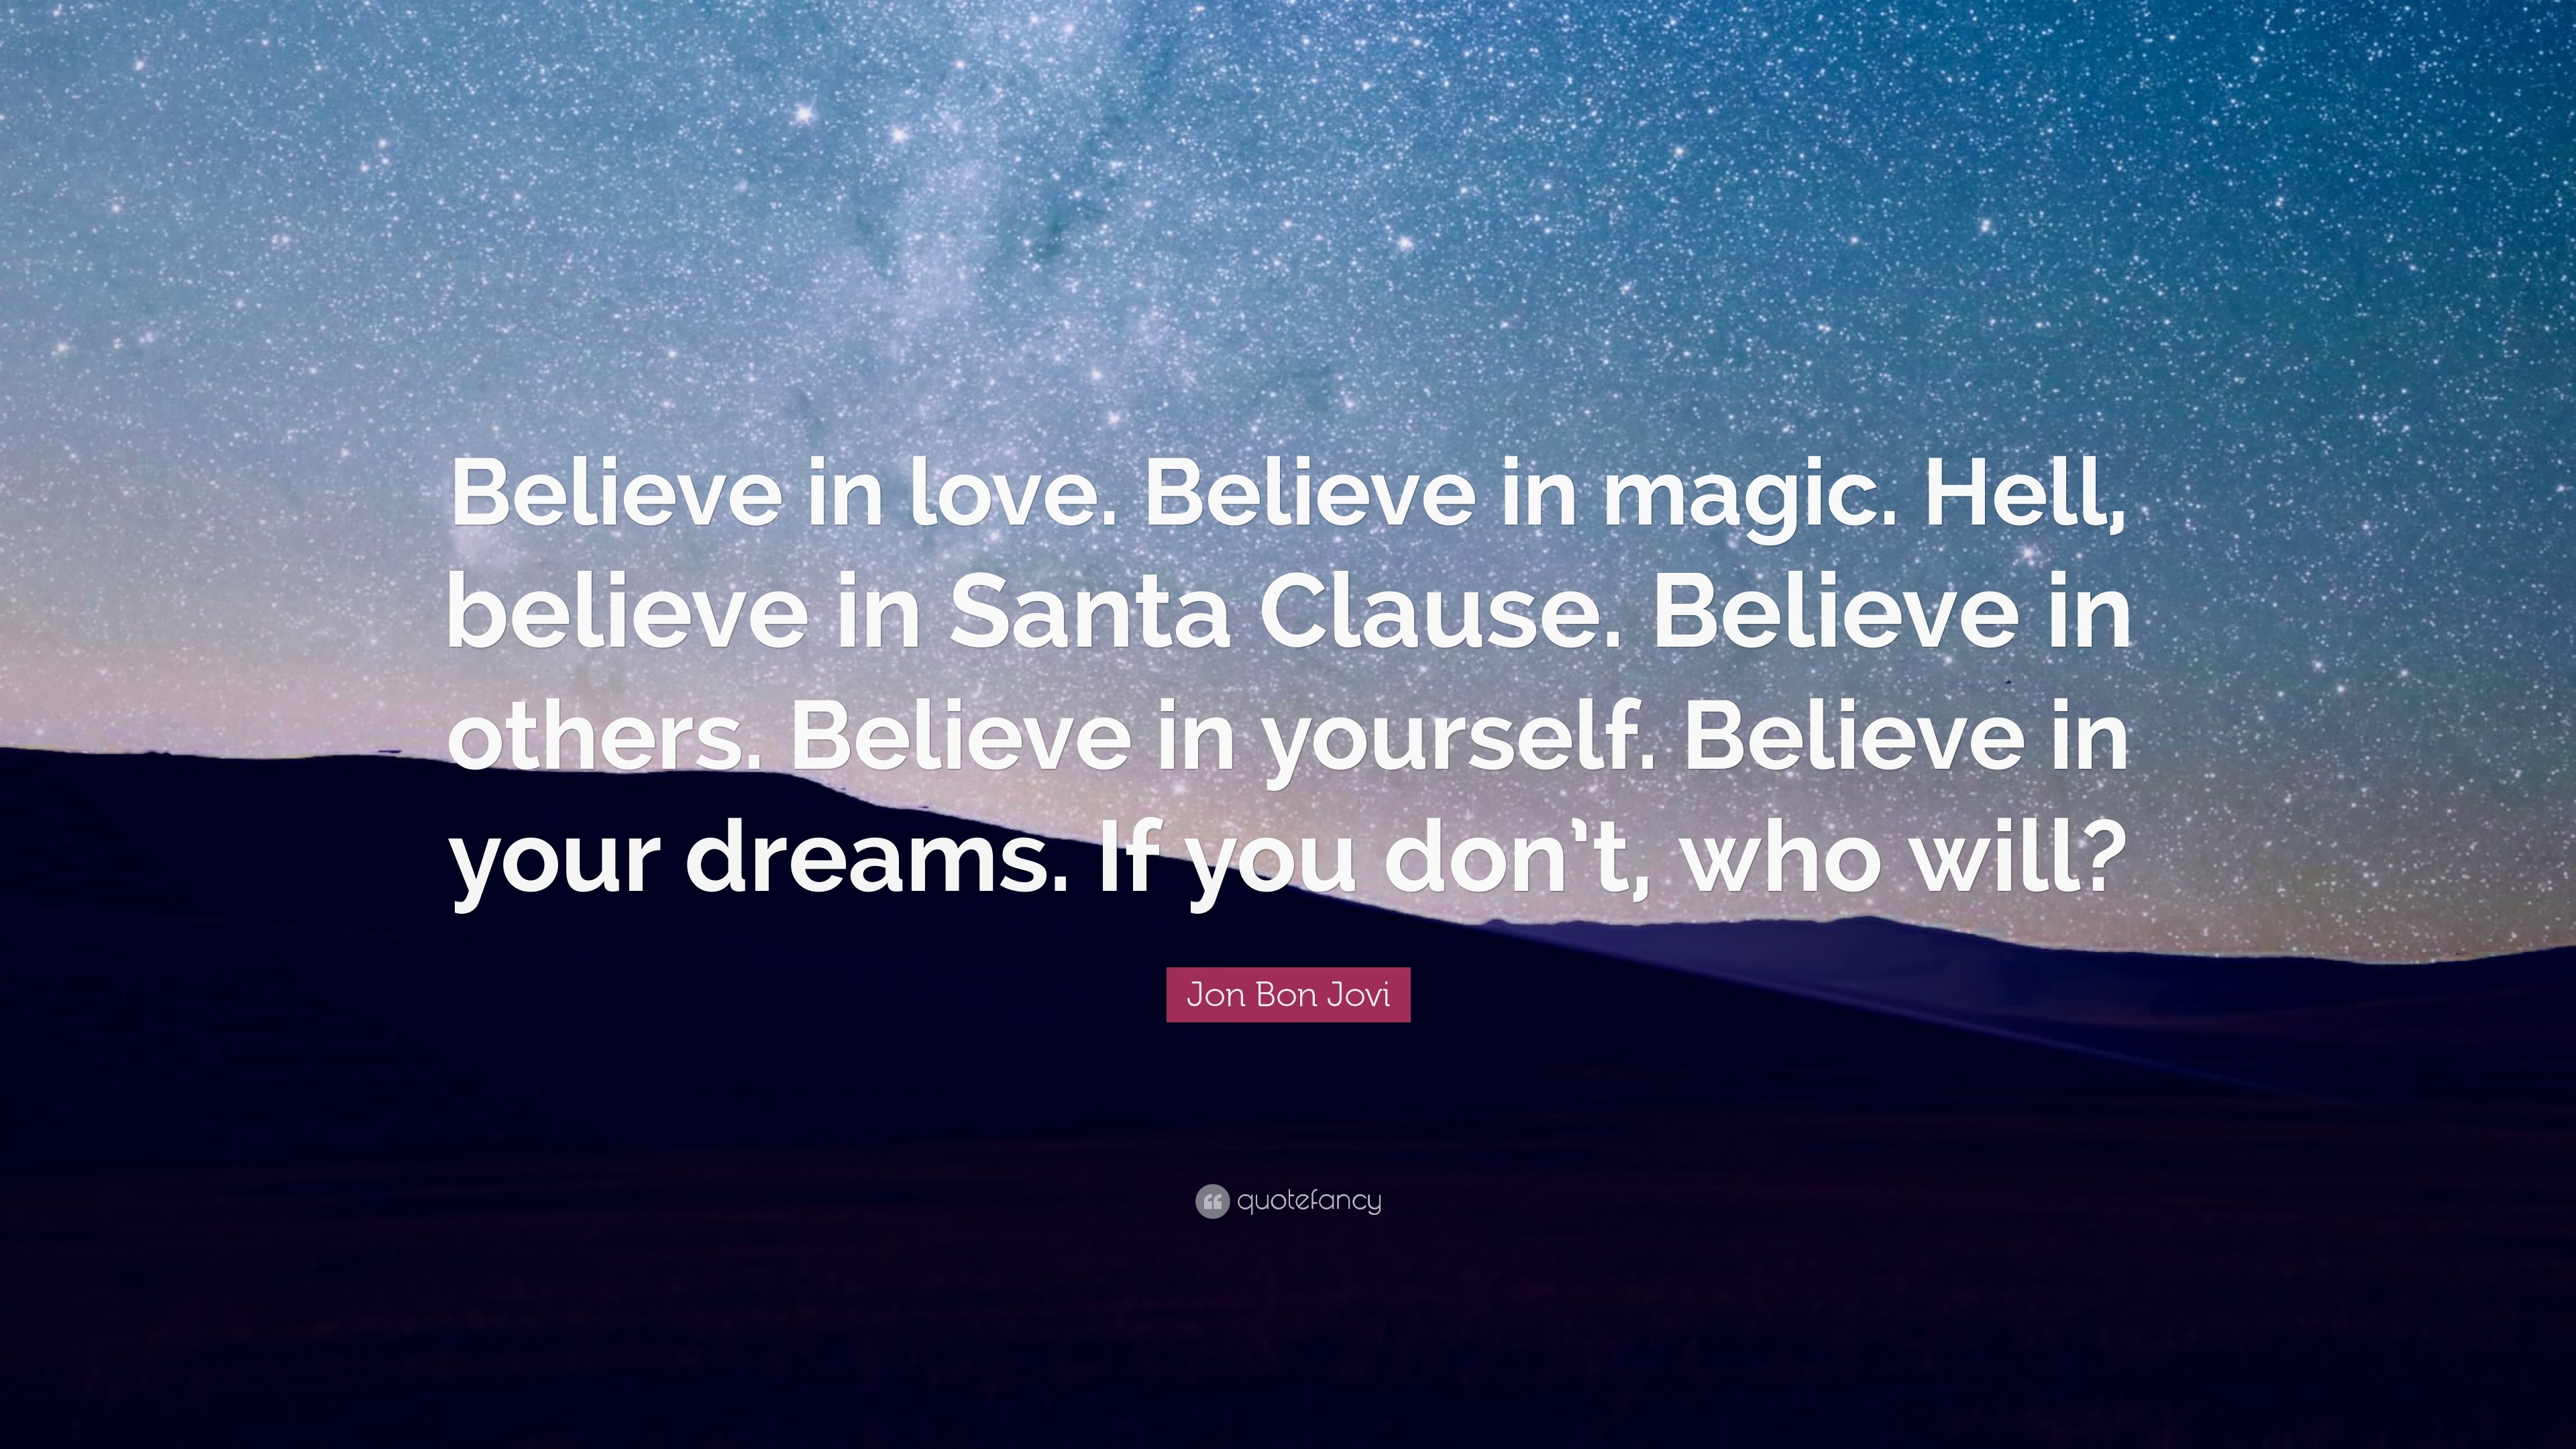 3840x2160 Jon Bon Jovi Quote: “Believe in love. Believe in magic. Hell,